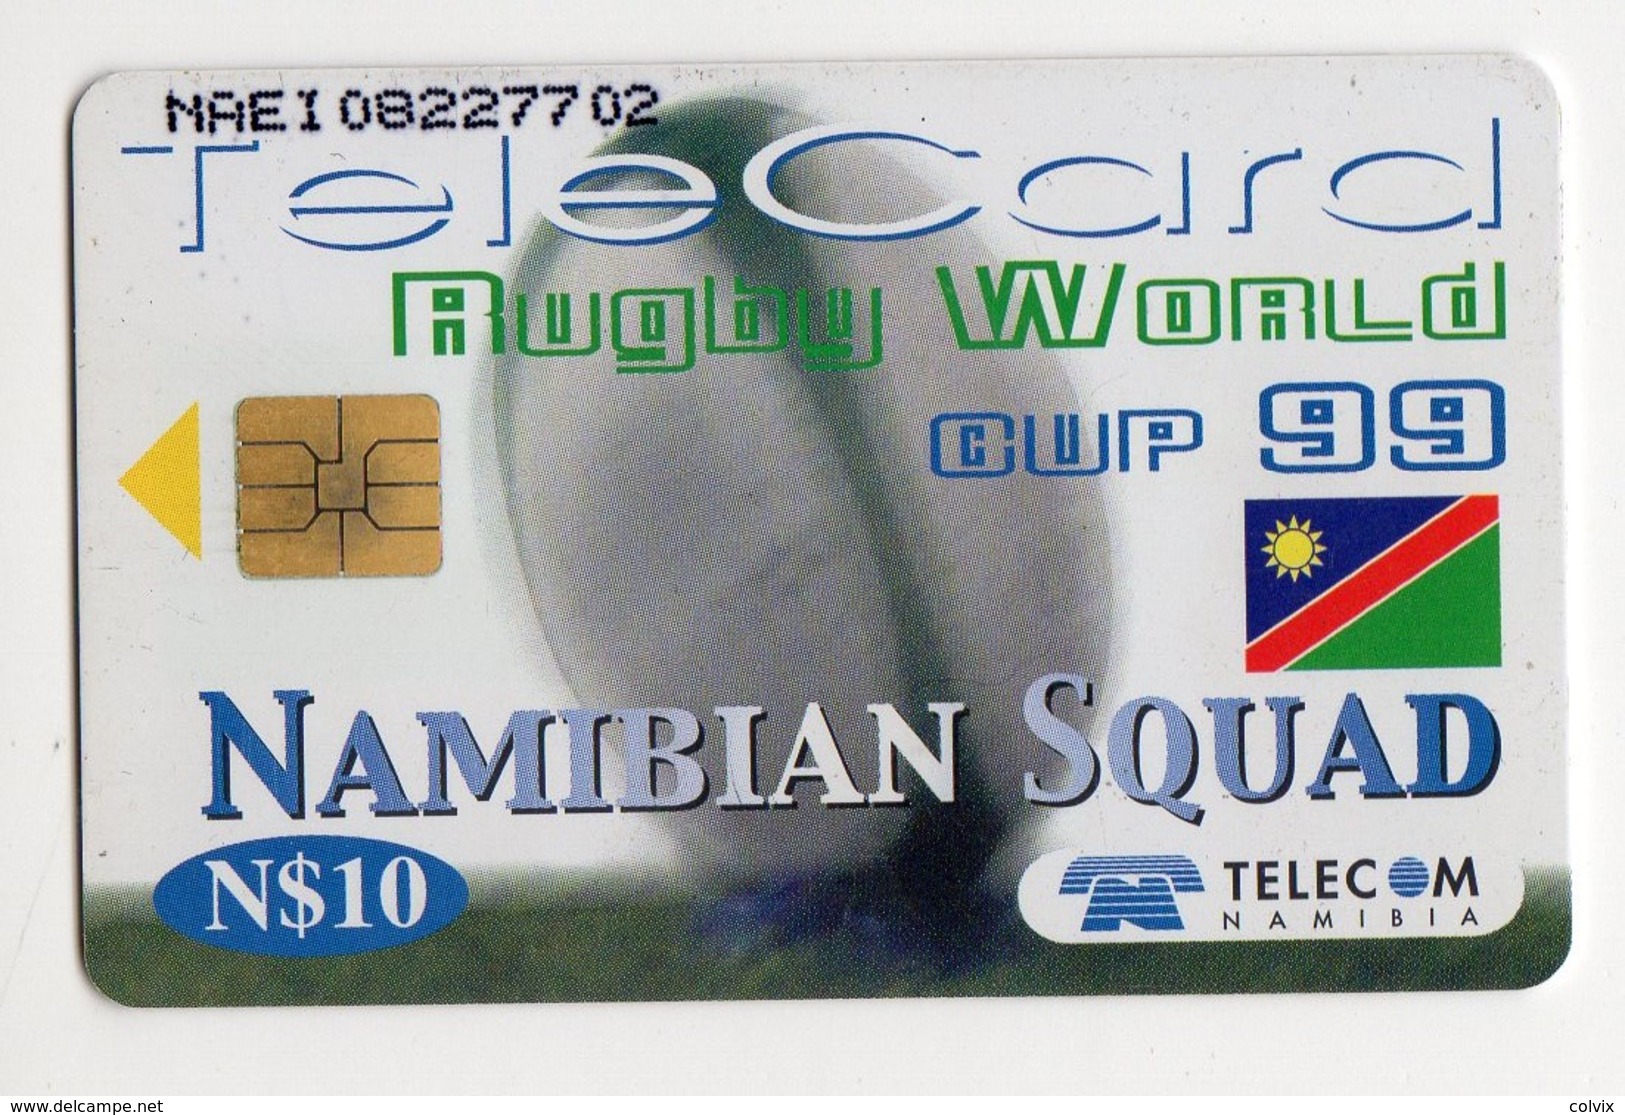 NAMIBIE REF MVCARD NMB-119 N$10 BACKS  Date 1999 RUGBY WORLD CUP 1999 - Namibia